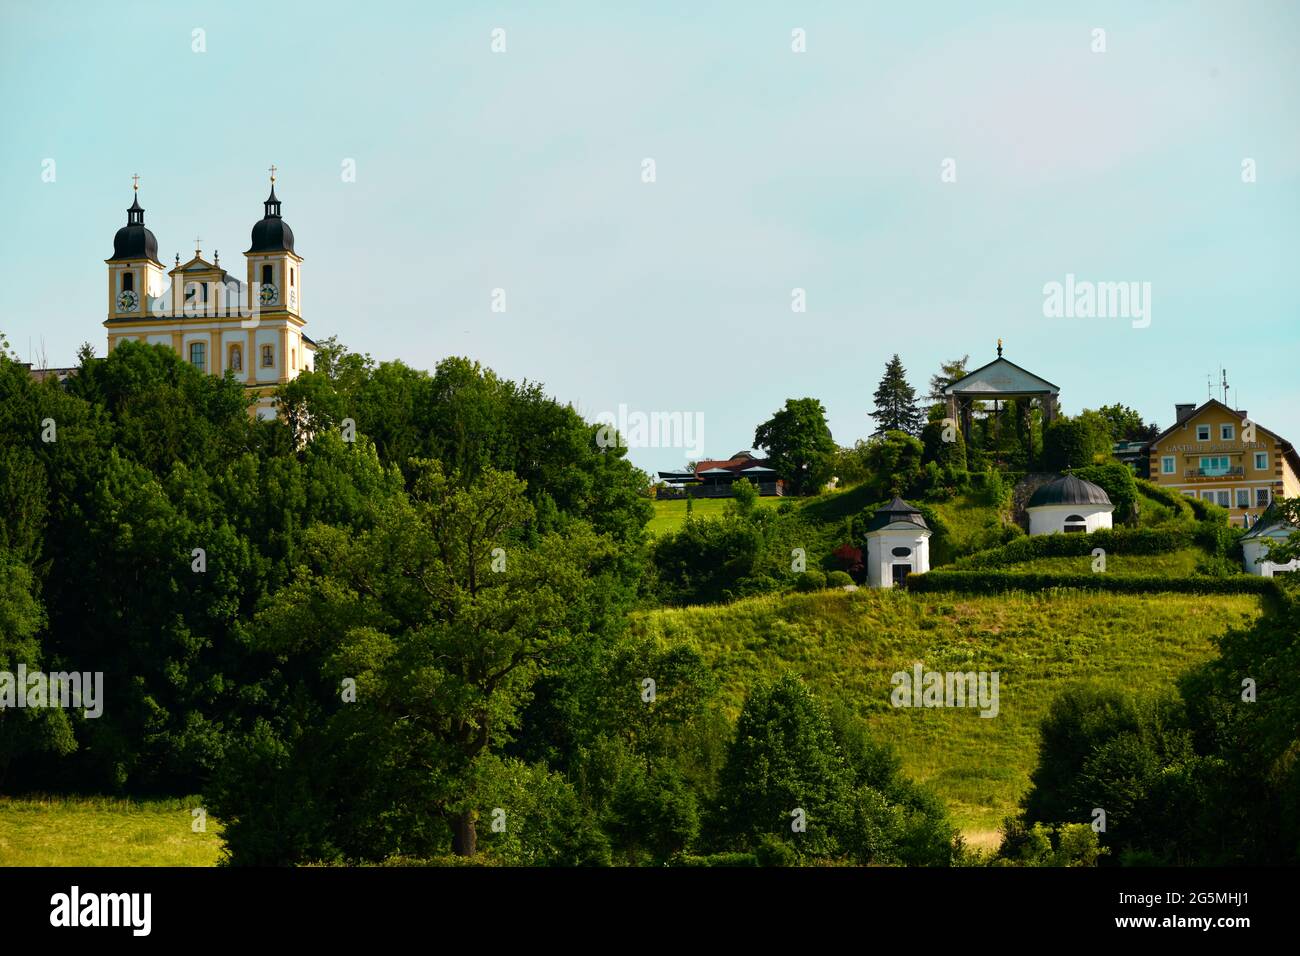 wunderschöne Wallfahrtskirche und hervorragendes Hotel und Gasthaus der Familie Mosshammer in Maria Plain in Salzburg, Österreich Banque D'Images